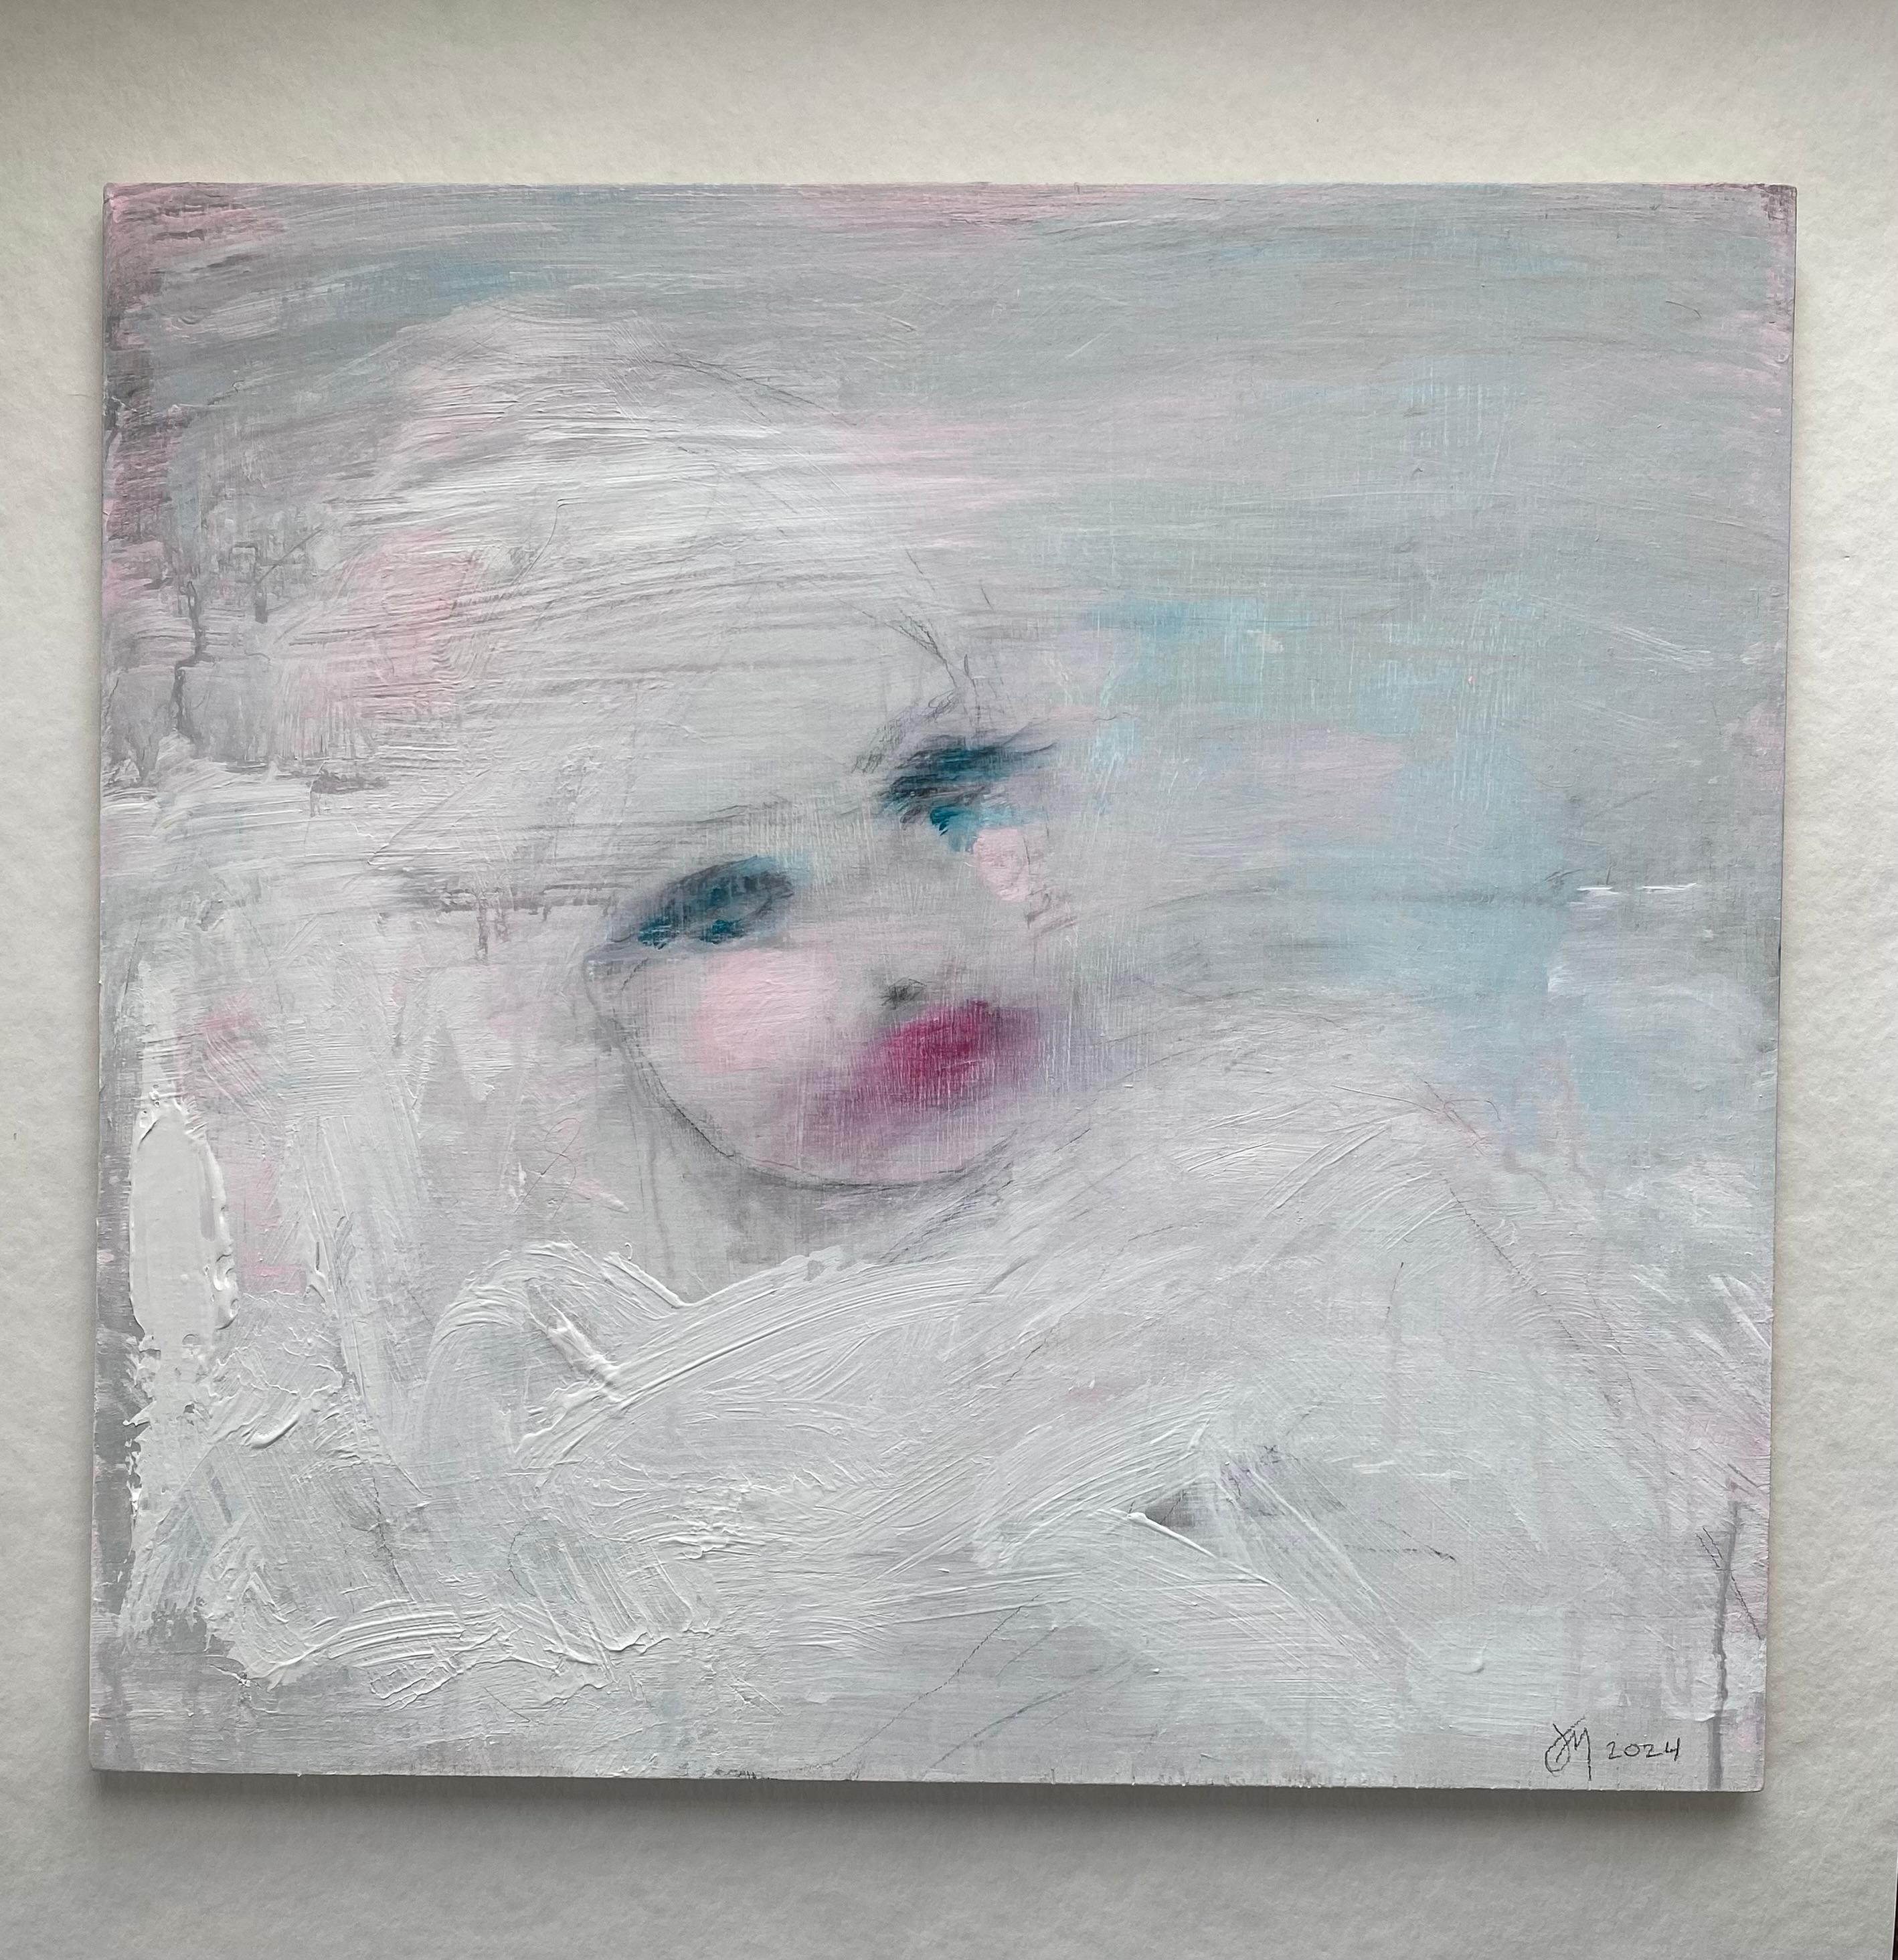 Poetisches Gemälde, das das verschwommene Porträt einer Frau zeigt. Pastellblaue, graue, rosafarbene und weiße Töne füllen die Komposition mit einer ätherischen Mischung aus Farben. Die Augen und Lippen der Frau leuchten in einem kräftigeren Rosa